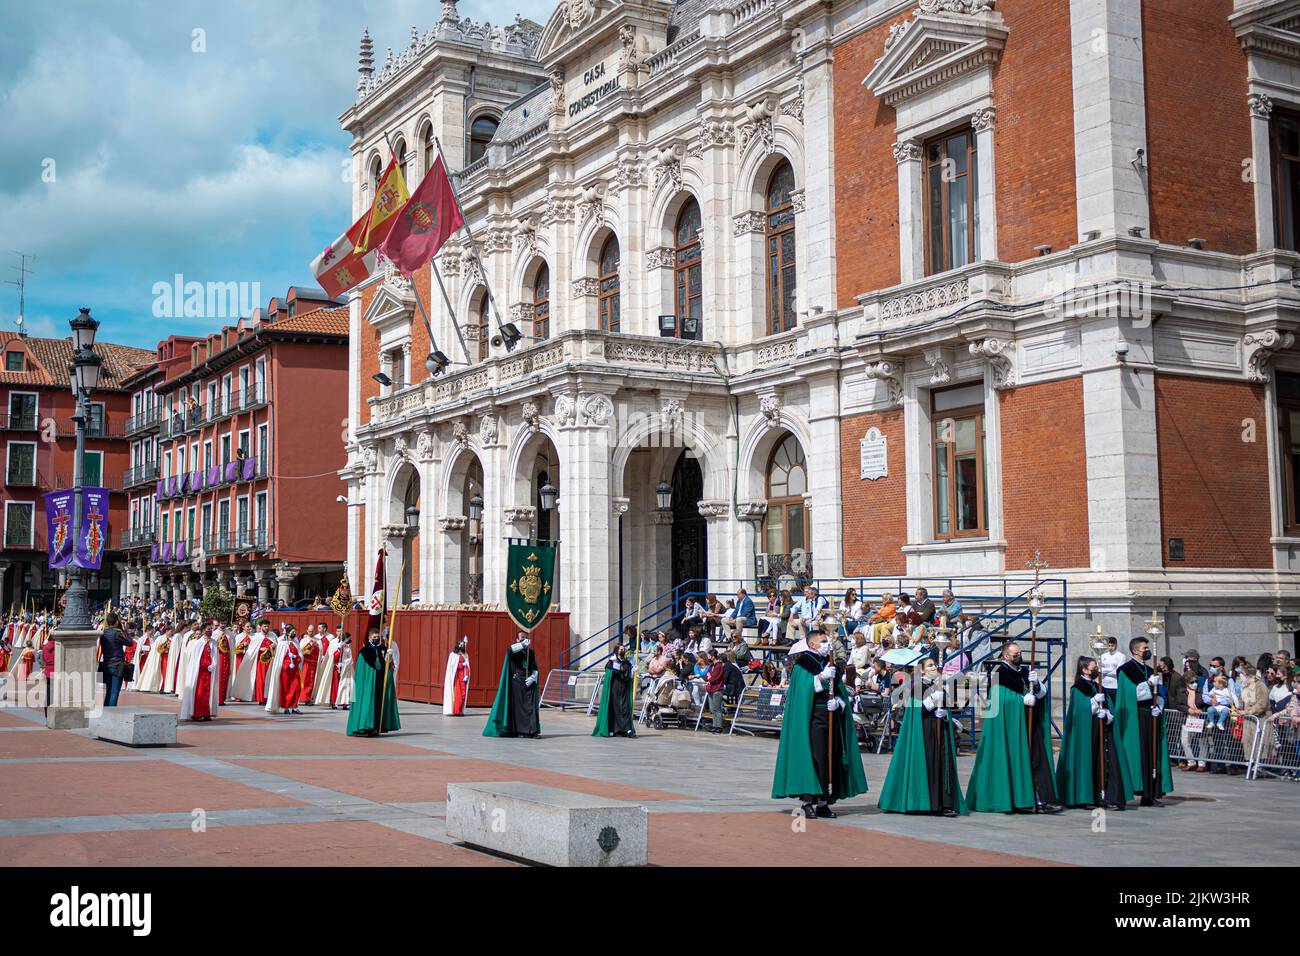 Semana santa, procesión del domingo de ramos frente al ayuntamiento de Valladolid Stock Photo